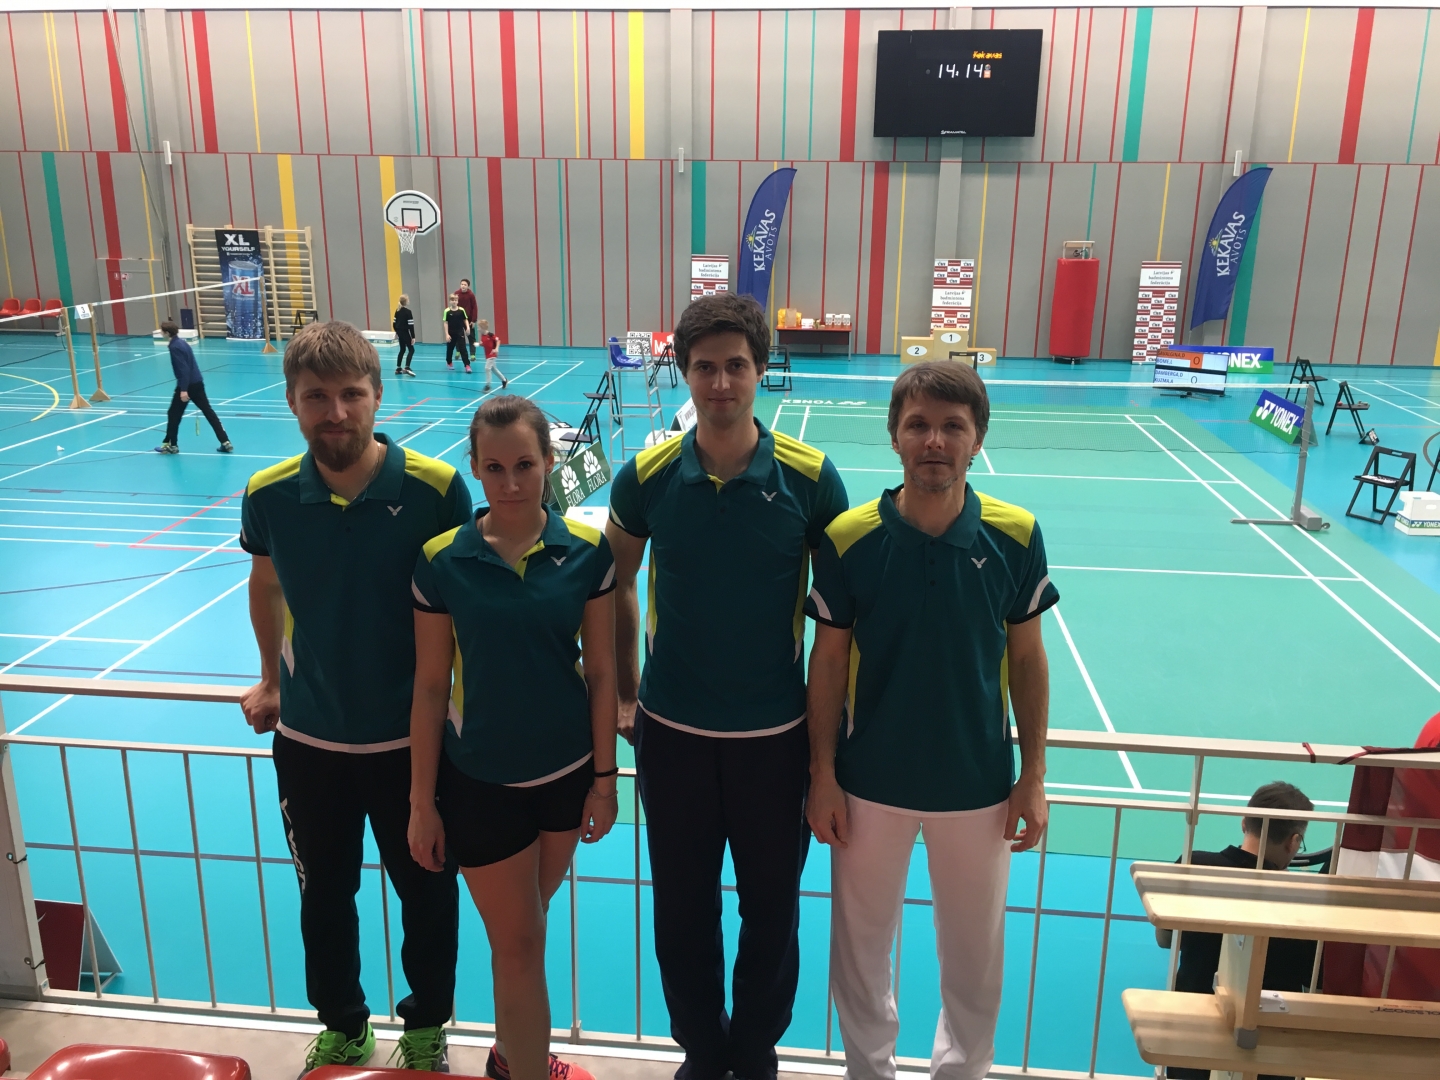 RTU students izcīna uzvaru Latvijas badmintona čempionātā